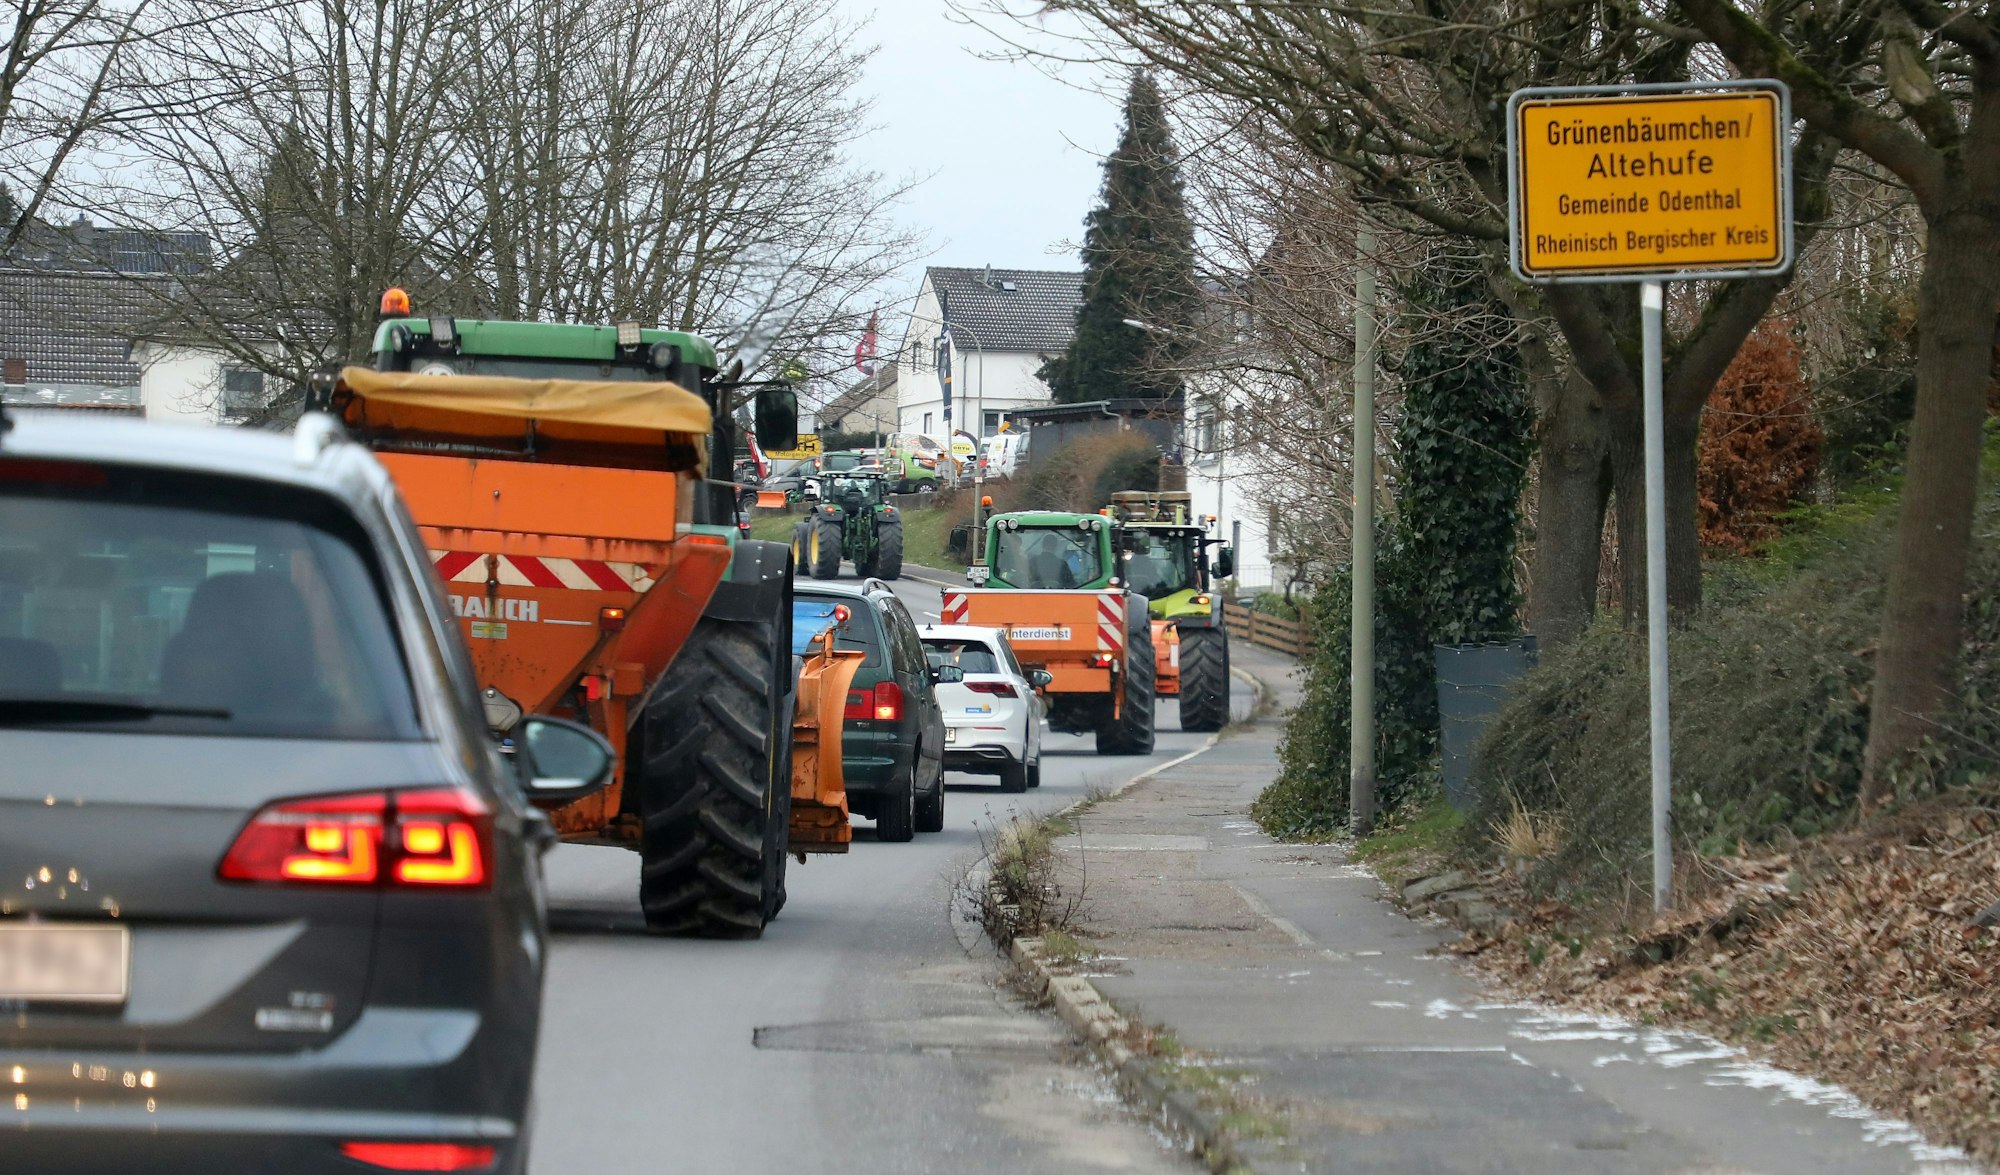 Am Ortsschild von Grünenbäumchen/Altehufe in der Gemeinde Odenthal ist eine Kolonne von Traktoren und Pkw zu sehen, die auf der B 506 in Richtung Bergisch Gladbach fahren.